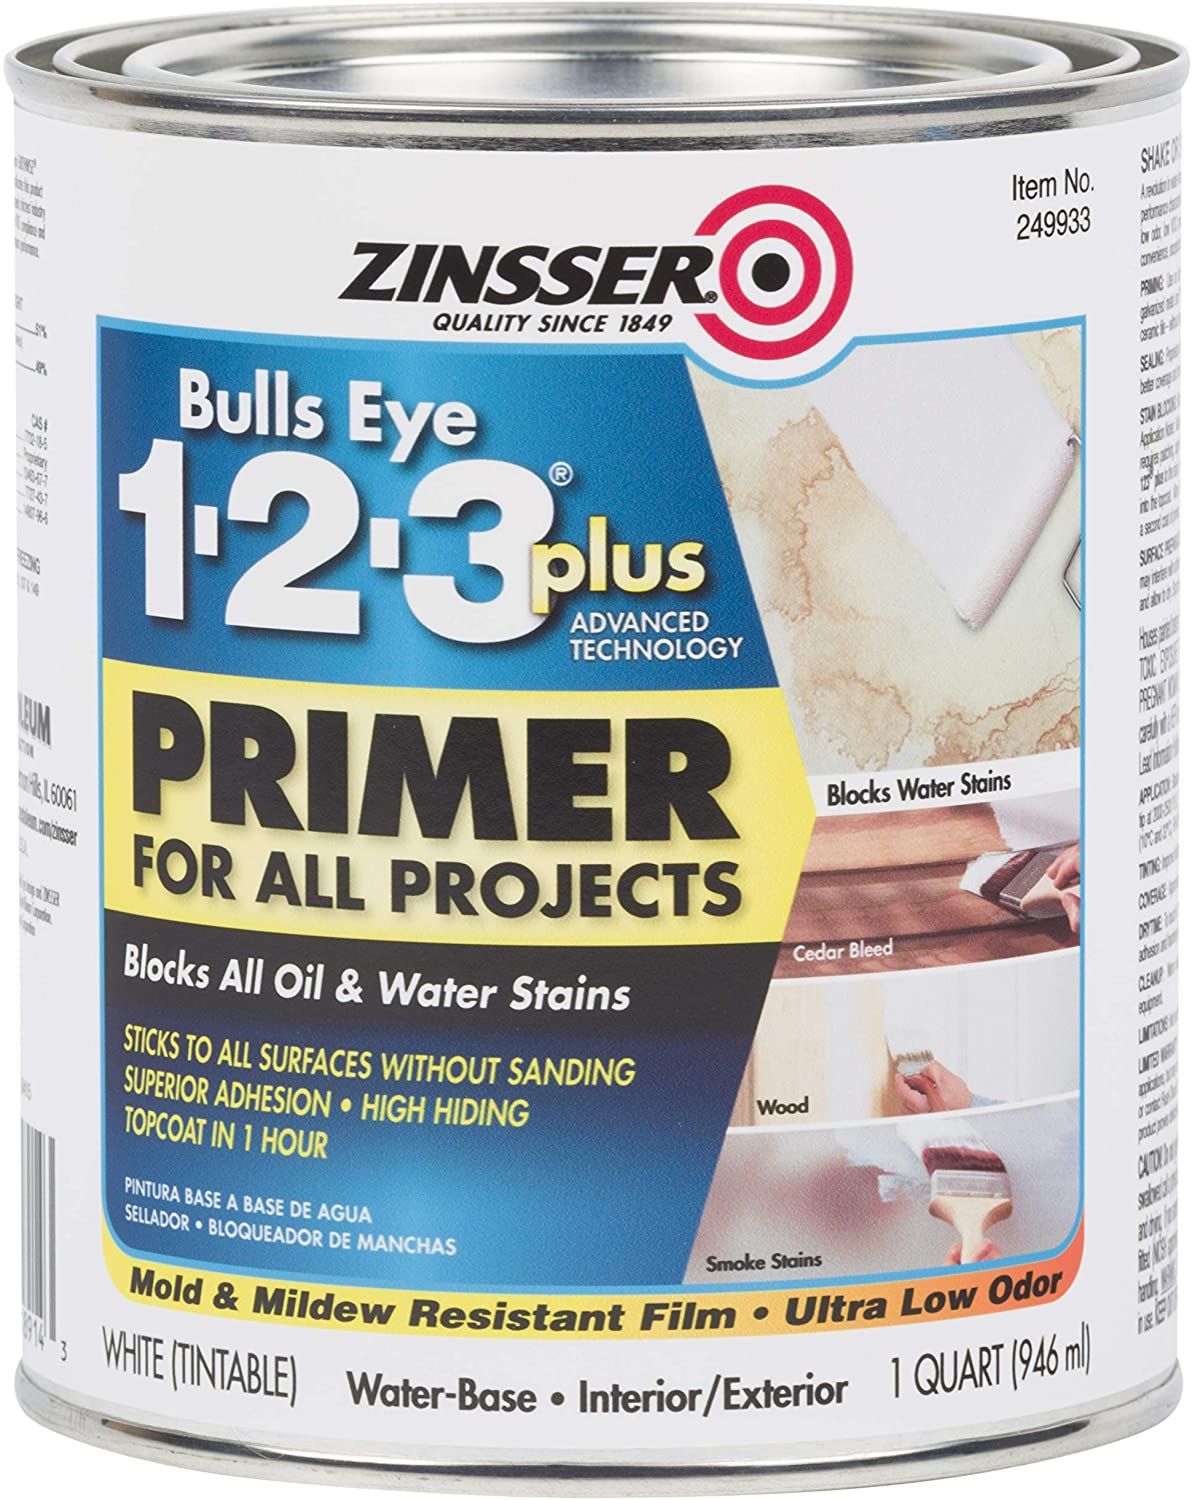 Zinsser Bulls Eye 1-2-3 Plus Primer Can